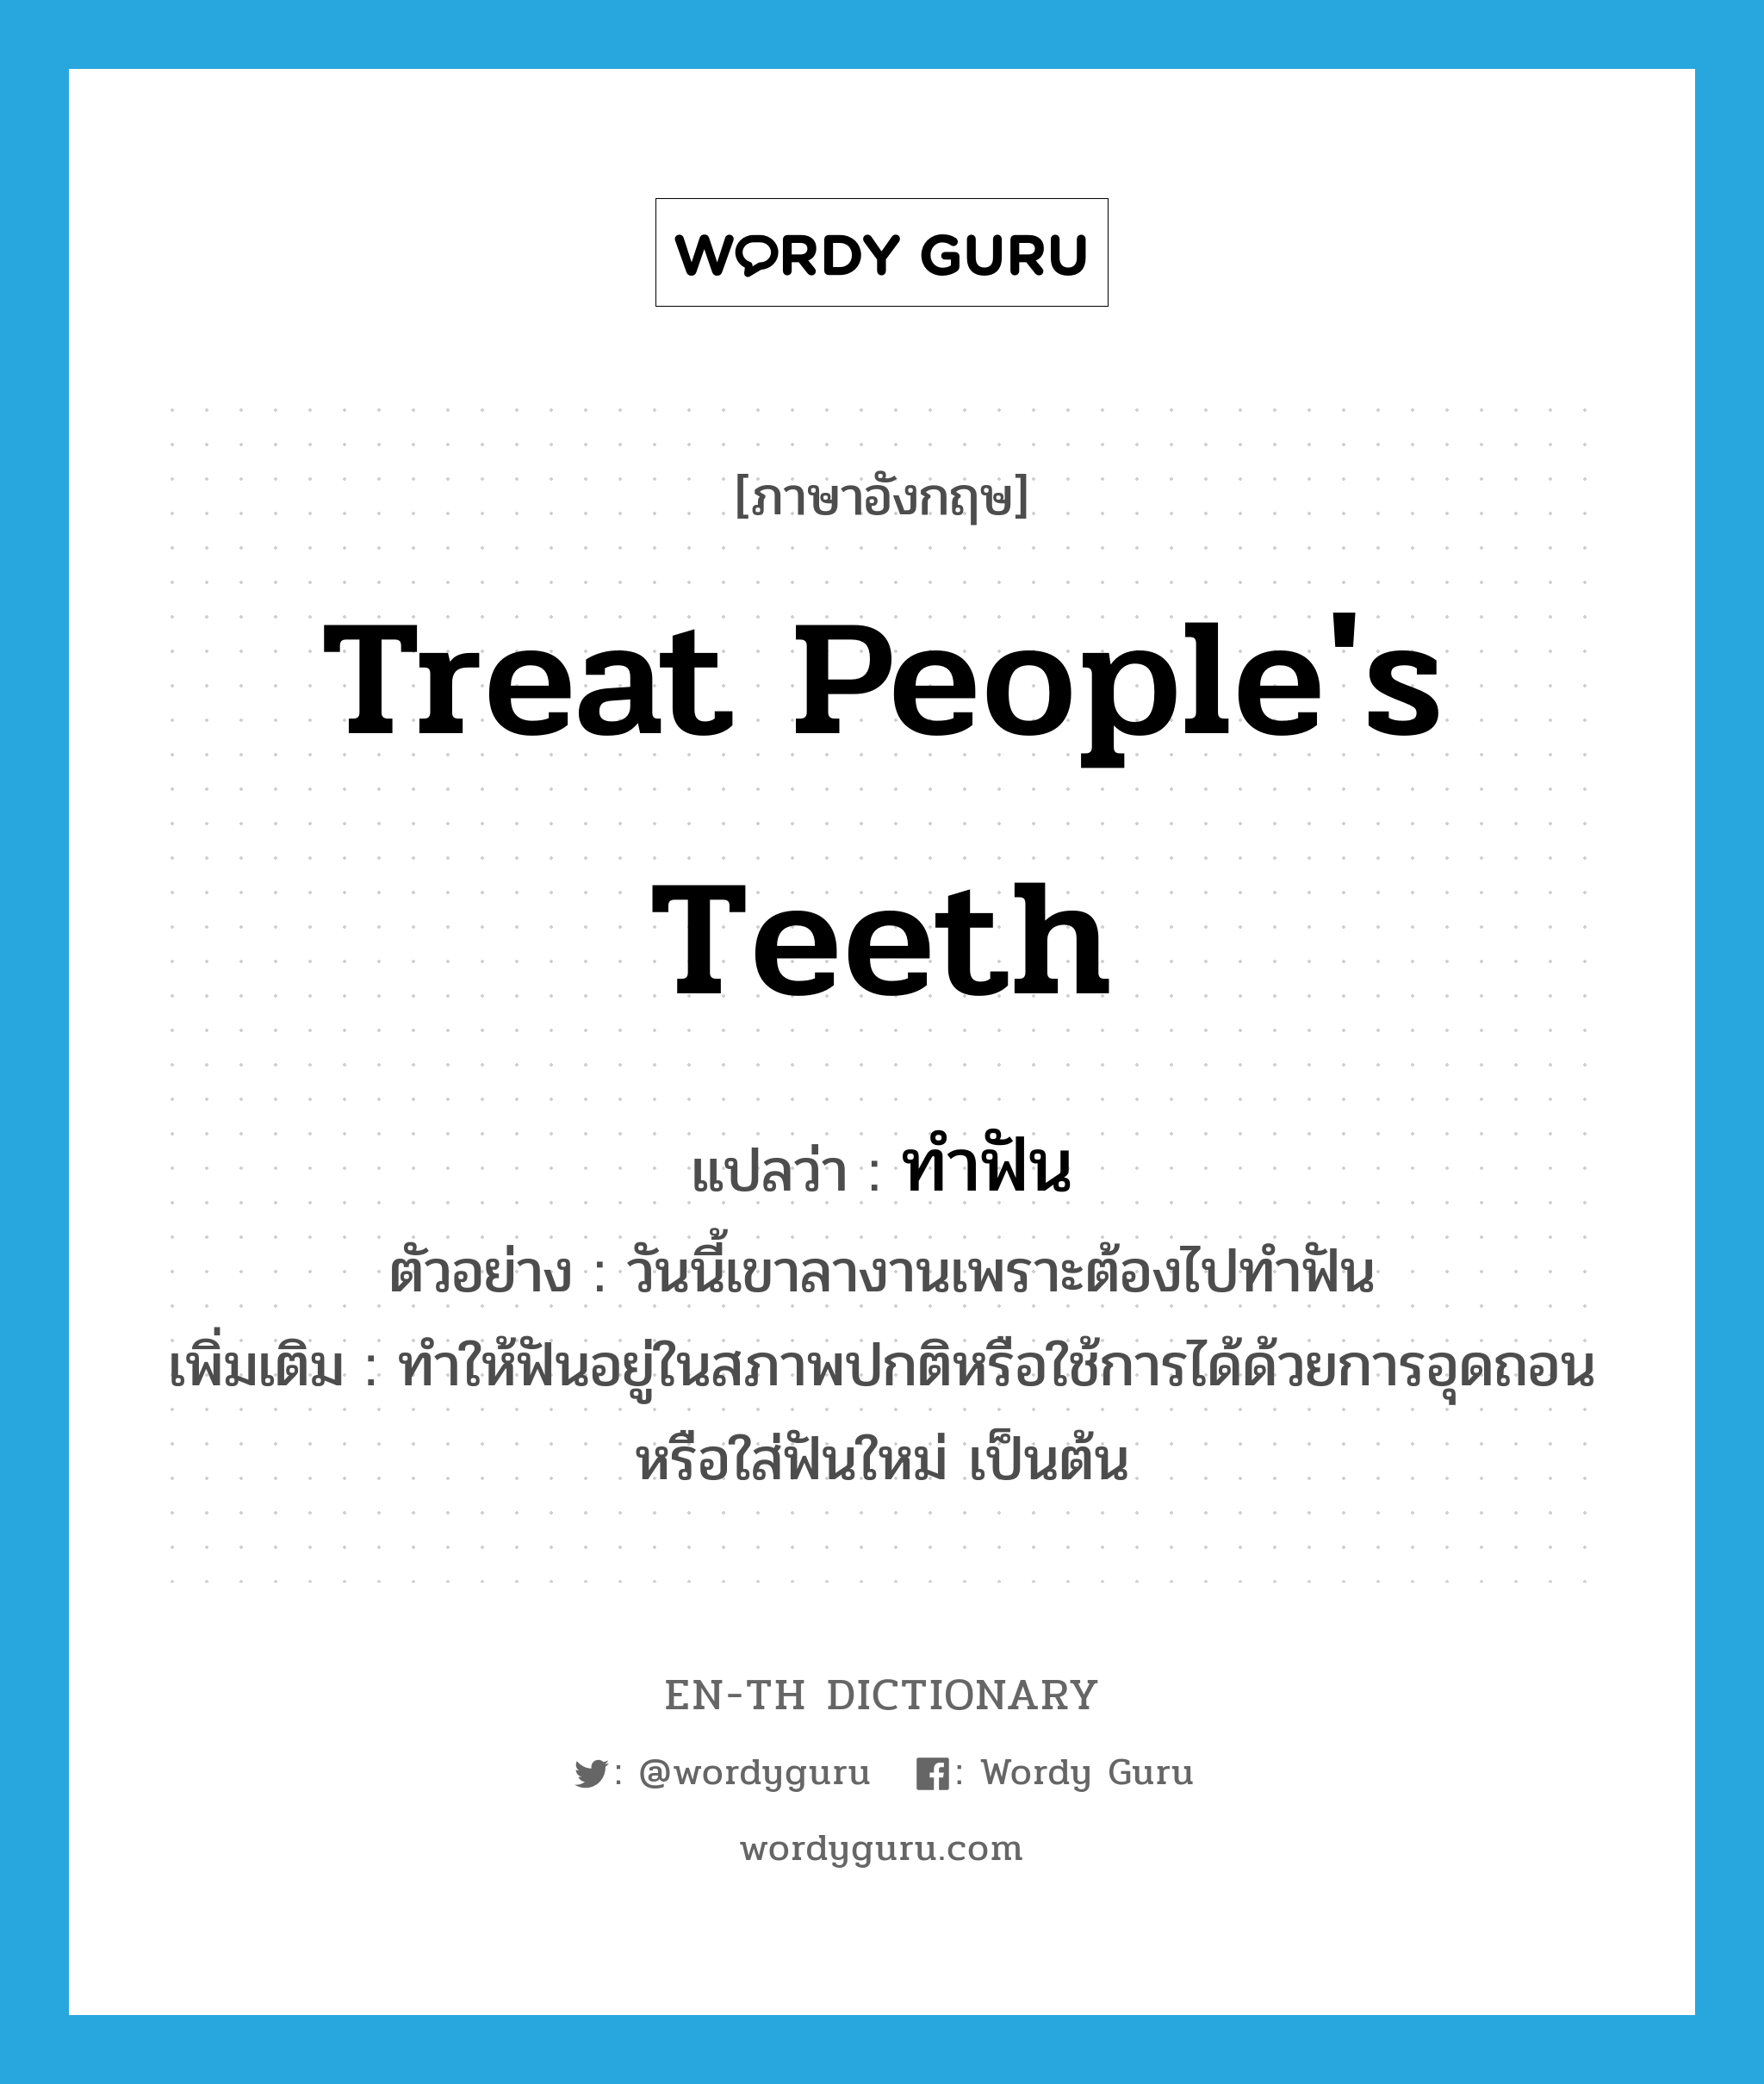 treat people's teeth แปลว่า?, คำศัพท์ภาษาอังกฤษ treat people's teeth แปลว่า ทำฟัน ประเภท V ตัวอย่าง วันนี้เขาลางานเพราะต้องไปทำฟัน เพิ่มเติม ทำให้ฟันอยู่ในสภาพปกติหรือใช้การได้ด้วยการอุดถอน หรือใส่ฟันใหม่ เป็นต้น หมวด V